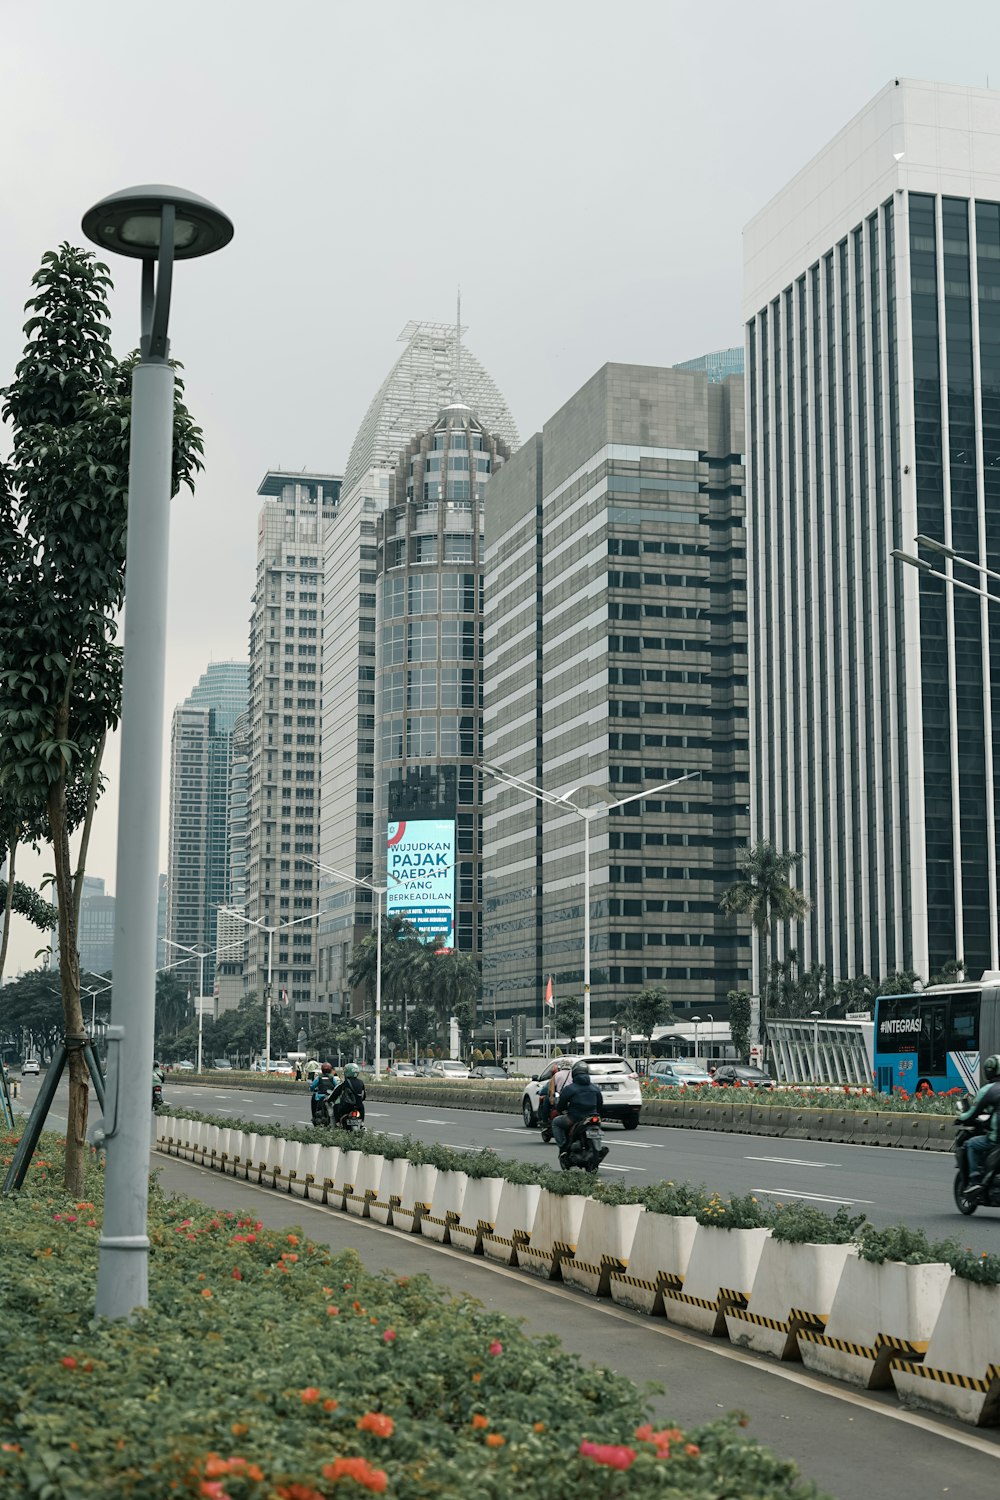 Una strada trafficata della città con edifici alti sullo sfondo